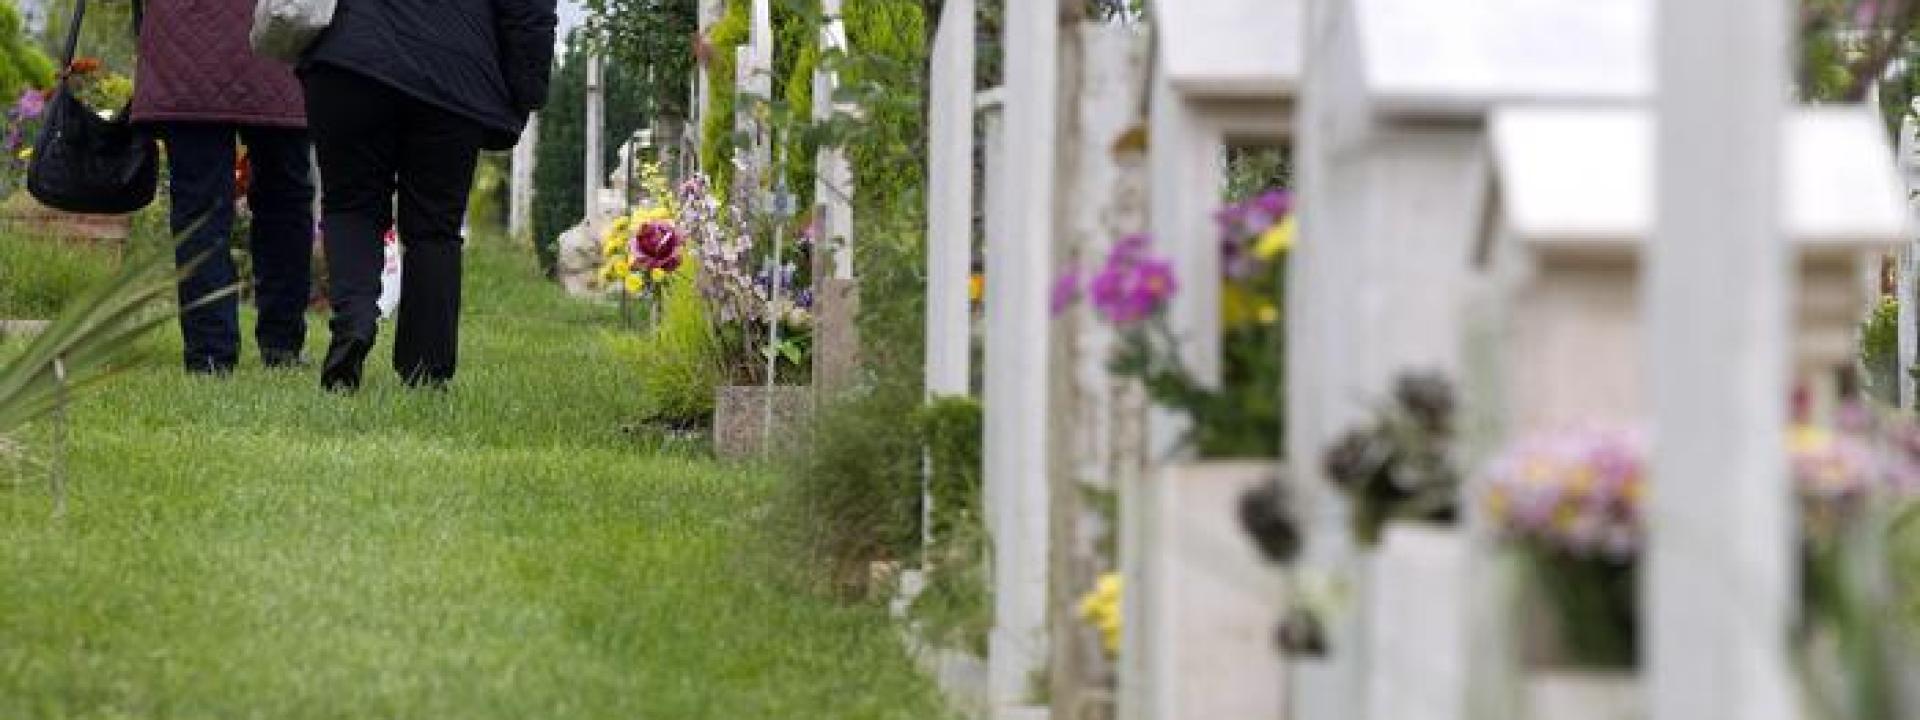 A undici anni percorre 35 km in bici per portare un fiore sulla tomba della bisnonna